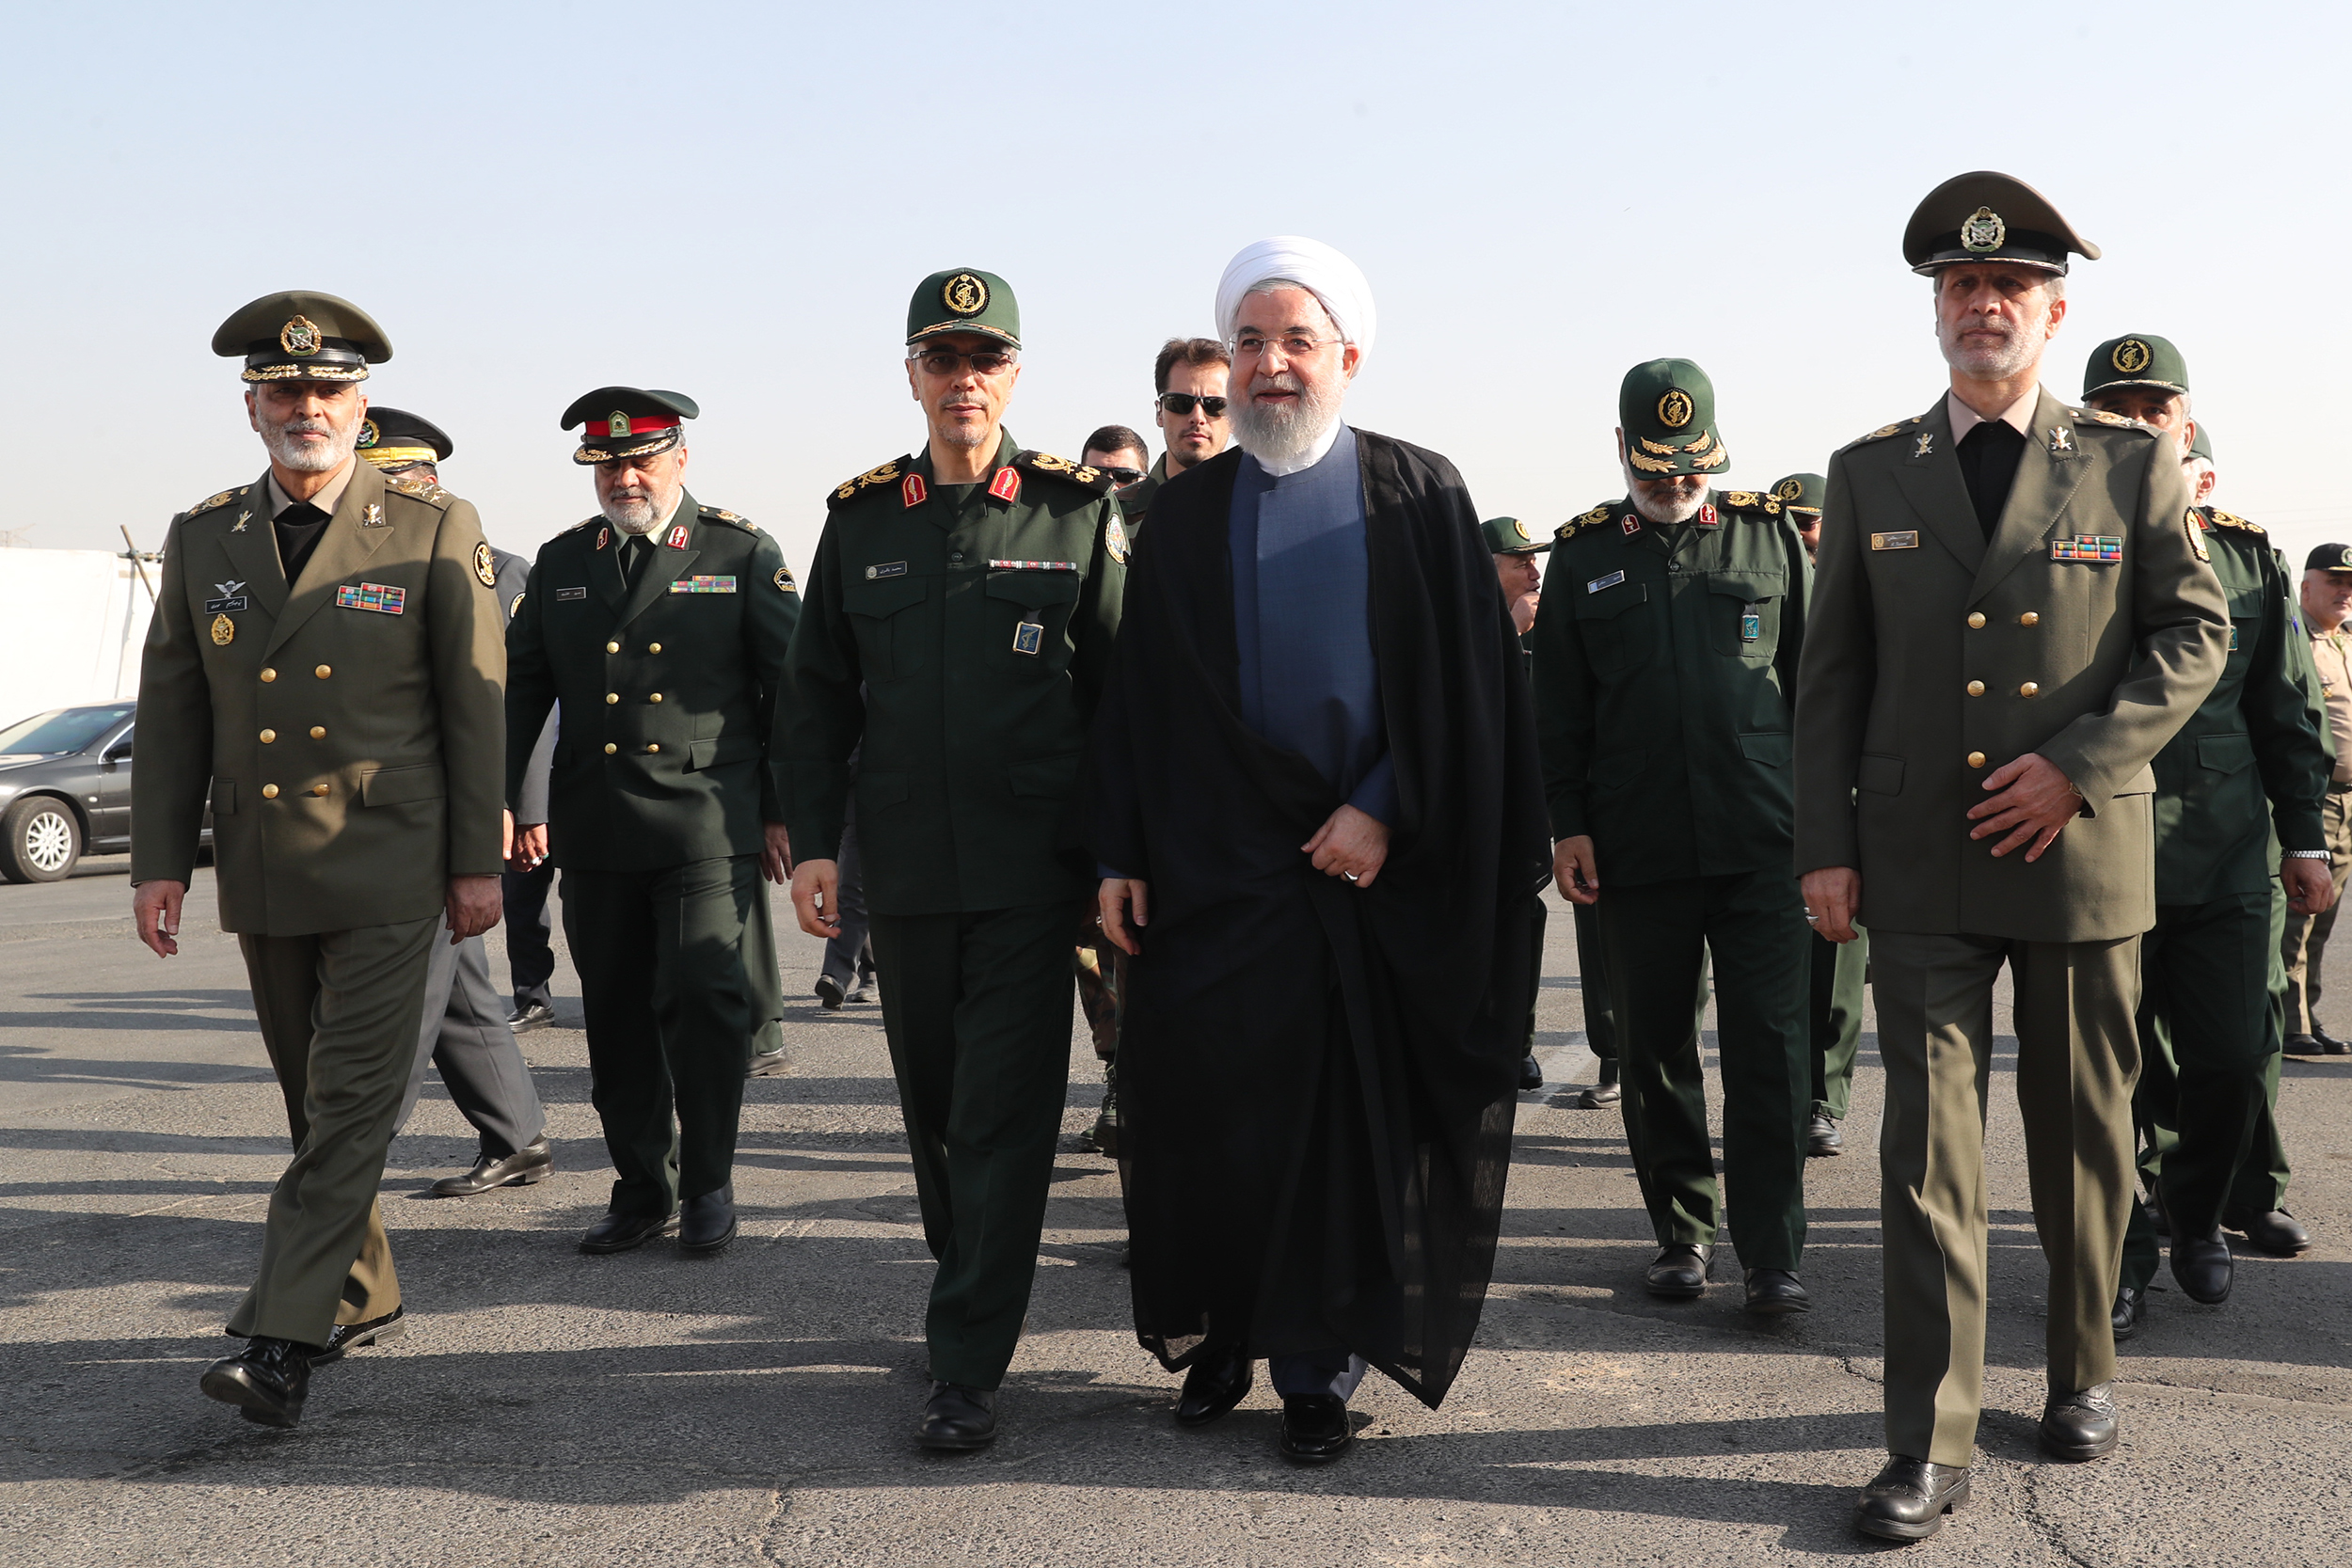 ARCHIVO FOTOGRÁFICO: el presidente iraní Hassan Rohani junto al ministro de Defensa Amir Hatami y otras autoridades militares del país persa en un acto en Teherán (Iranian Presidency / AFP)